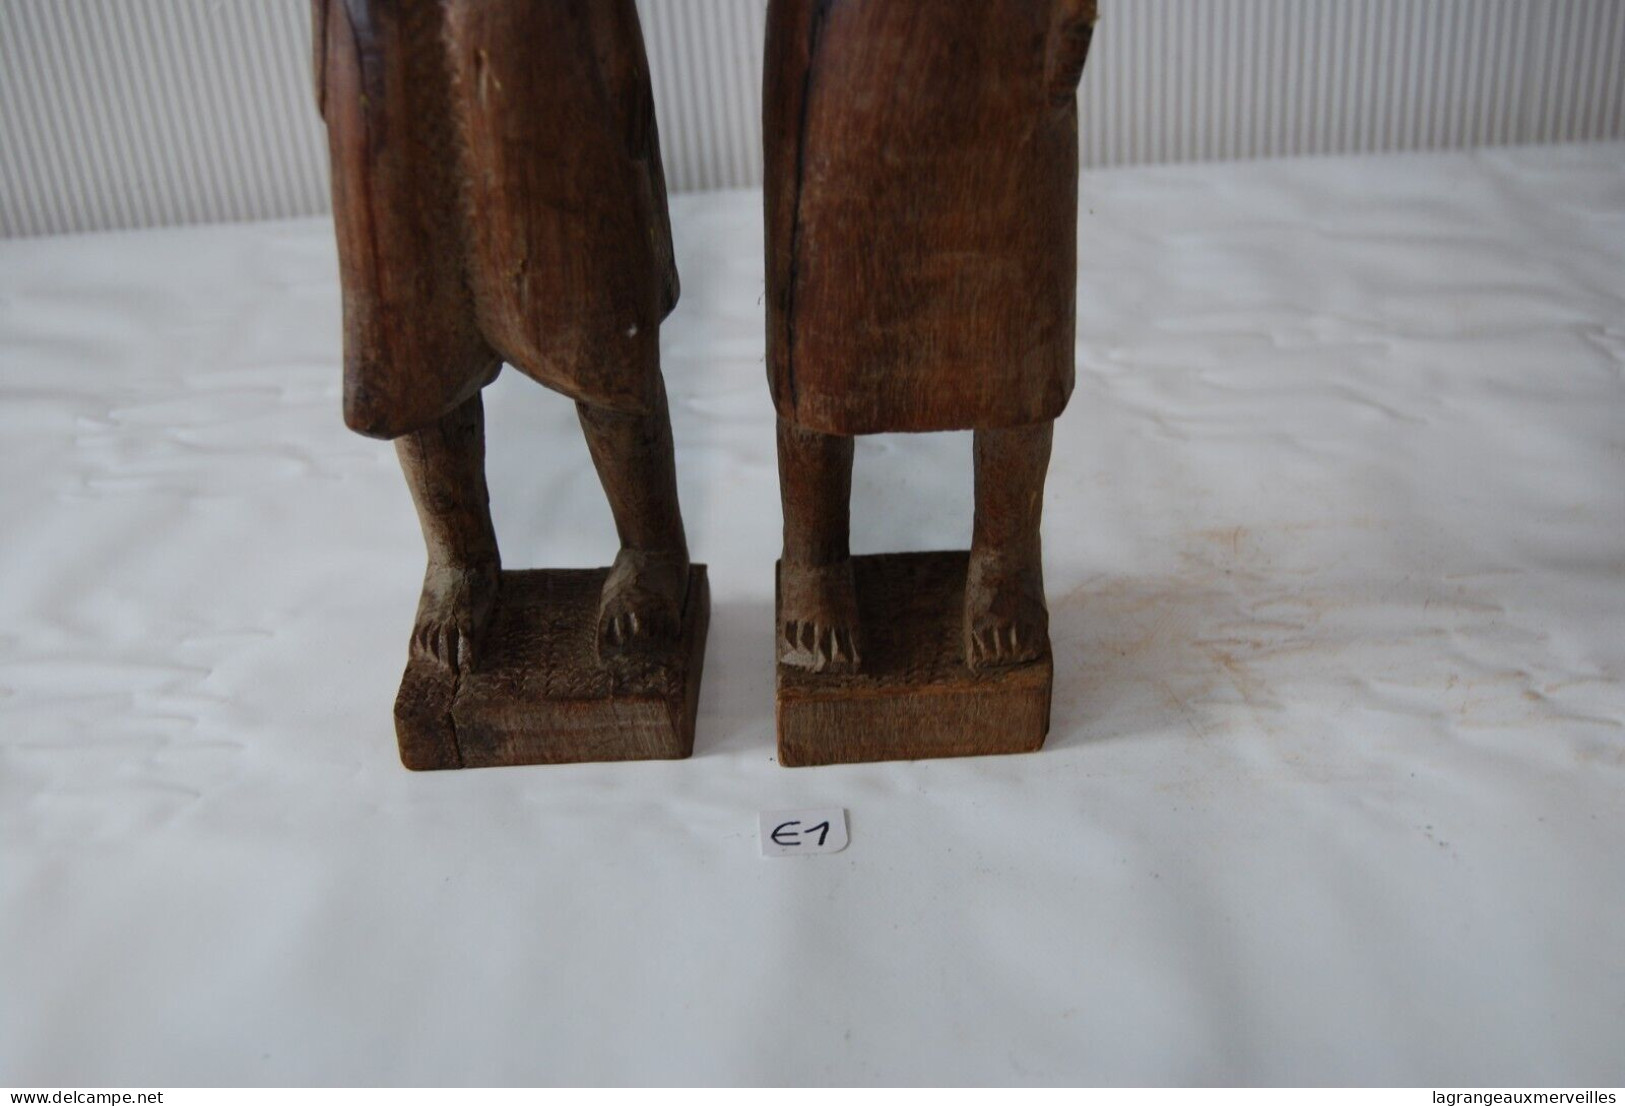 E1 Ancien couple buste africain - outil ancien - ethnique - tribal H42